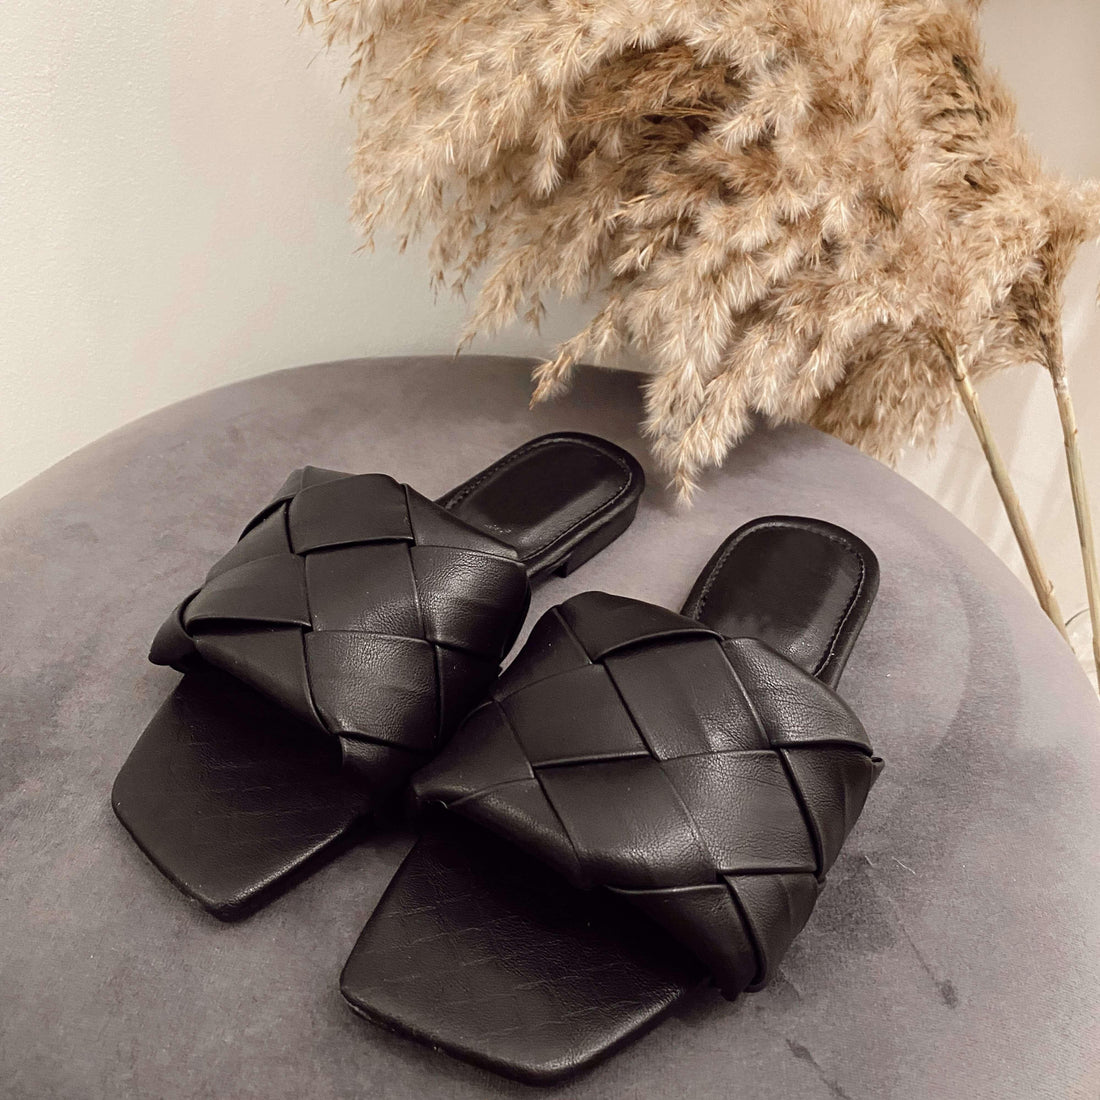 Zwarte slippers met gevlochten detail. Bottega Venete inspired. De slippers vallen normaal op maat en zijn gemaakt van PU vegan leather.